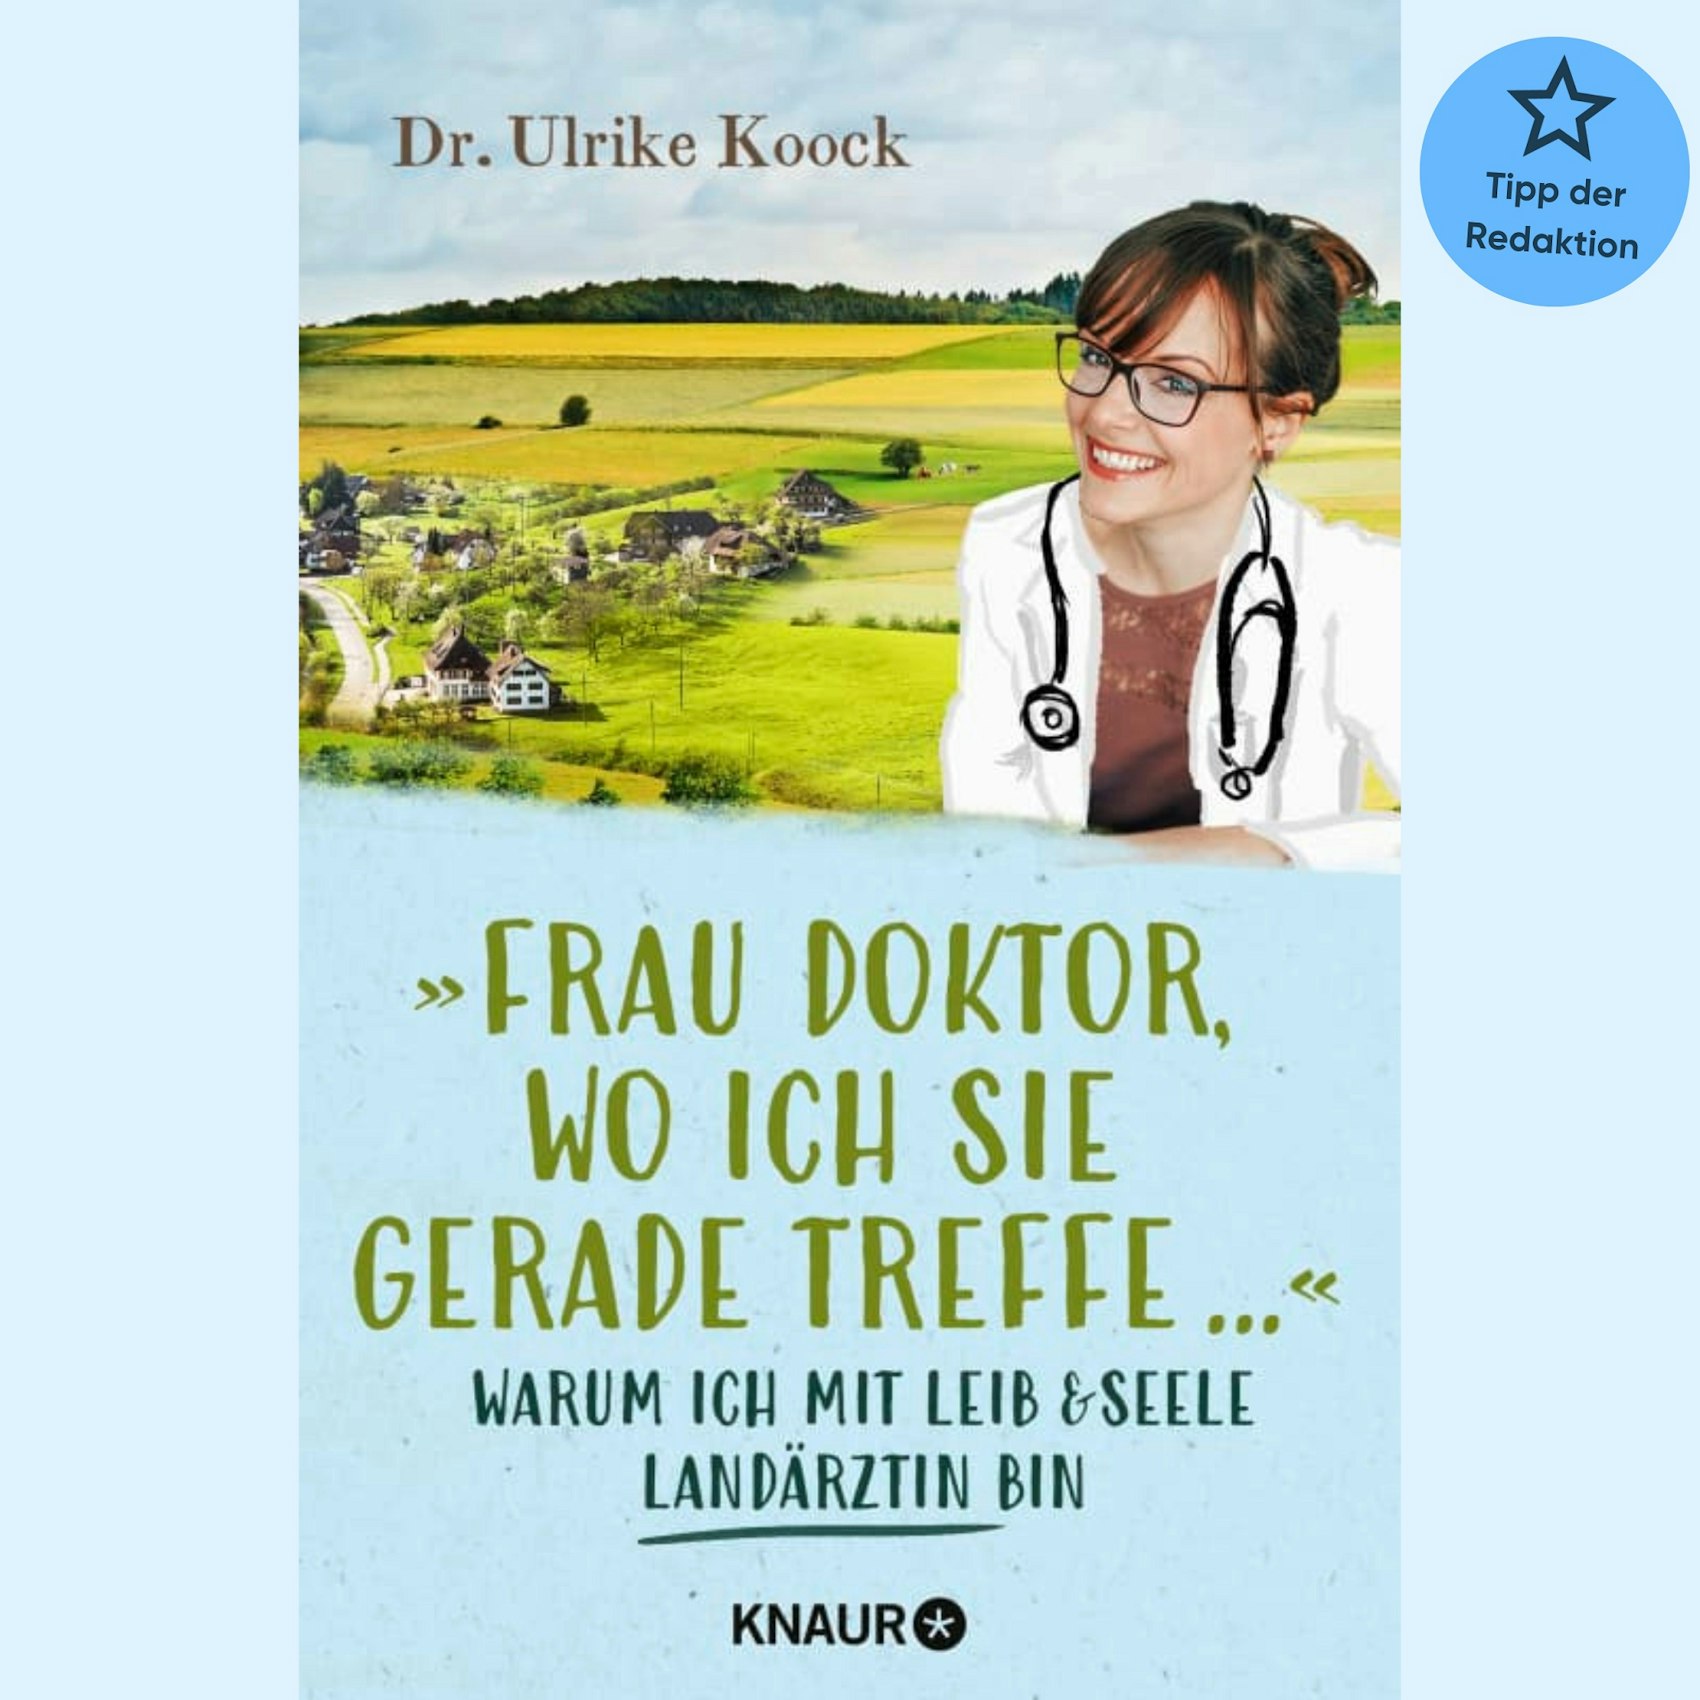 Das Buchcover zu "Frau Doktor, wo ich sie gerade treffe ..." zeigt die Autorin vor einem Dorf.